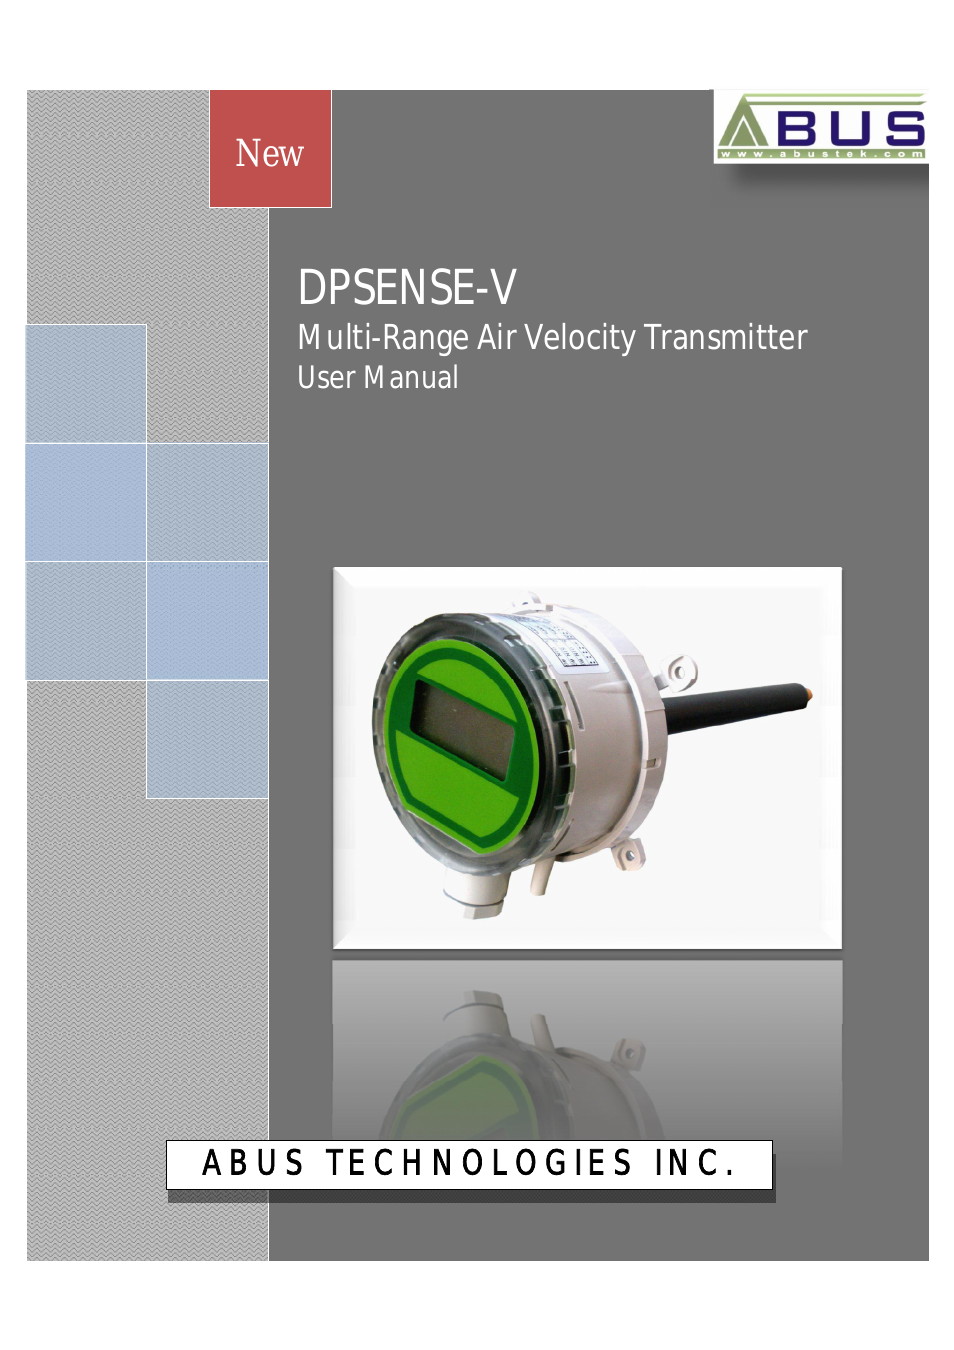 DPSENSE-V Series Multi-Range Air Velocity Transmitter